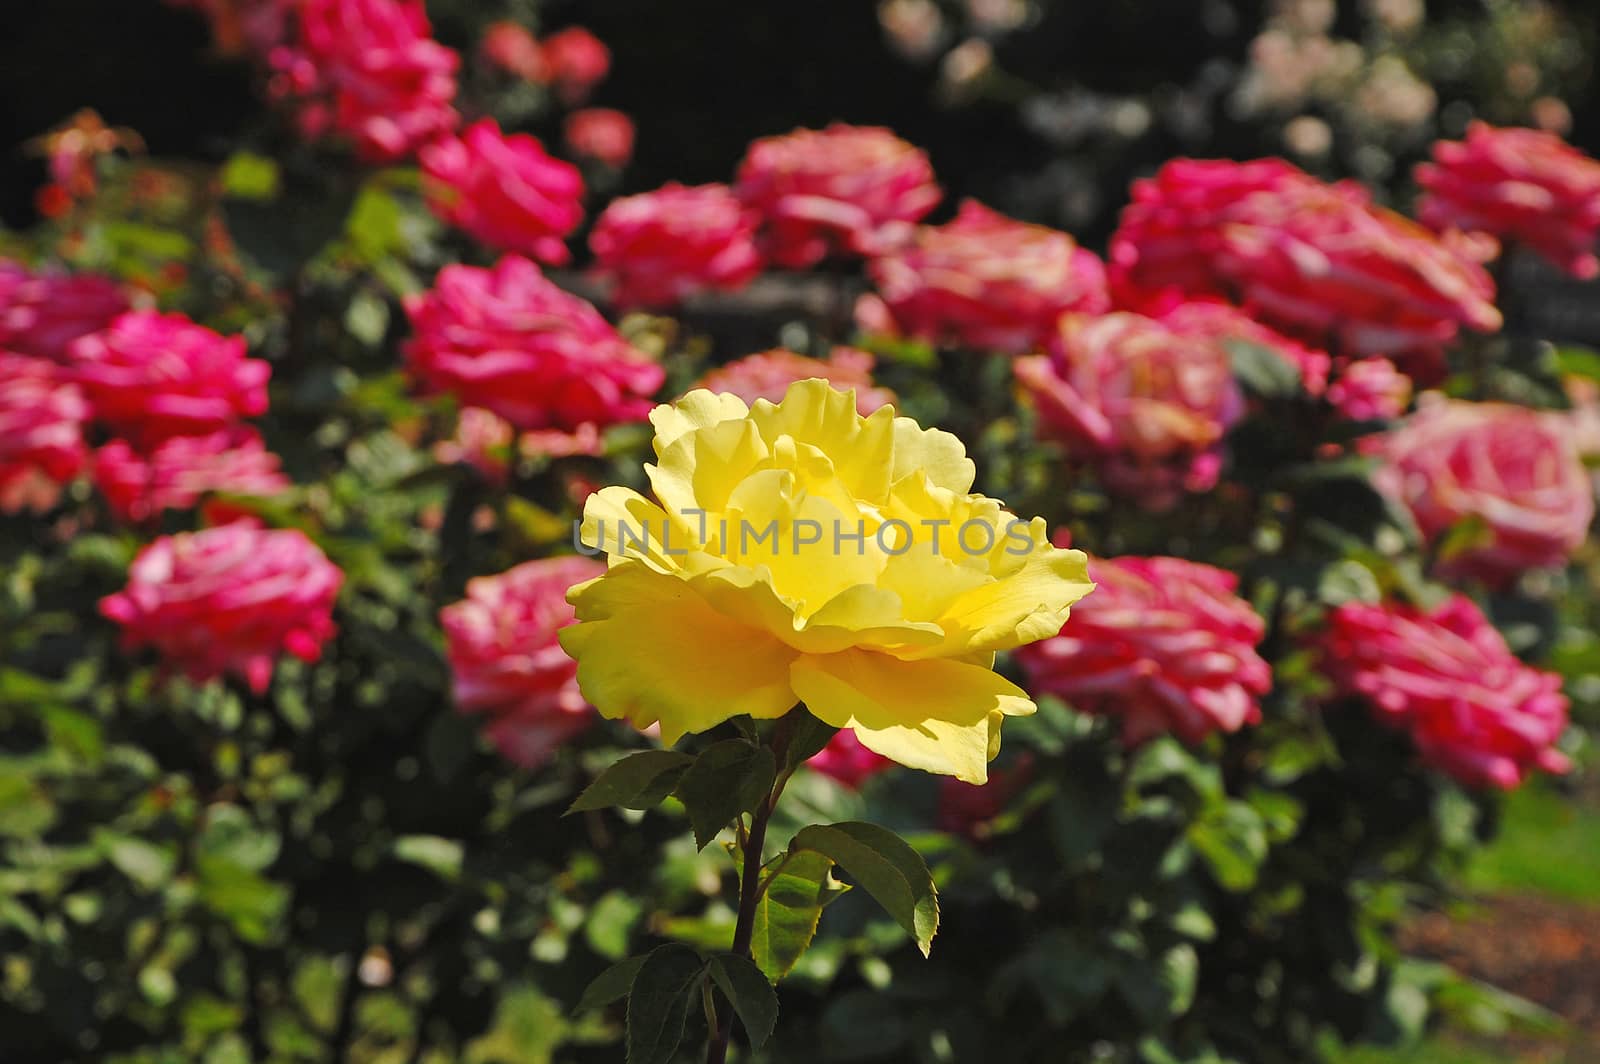 Single yellow rose blooming in pink rose garden